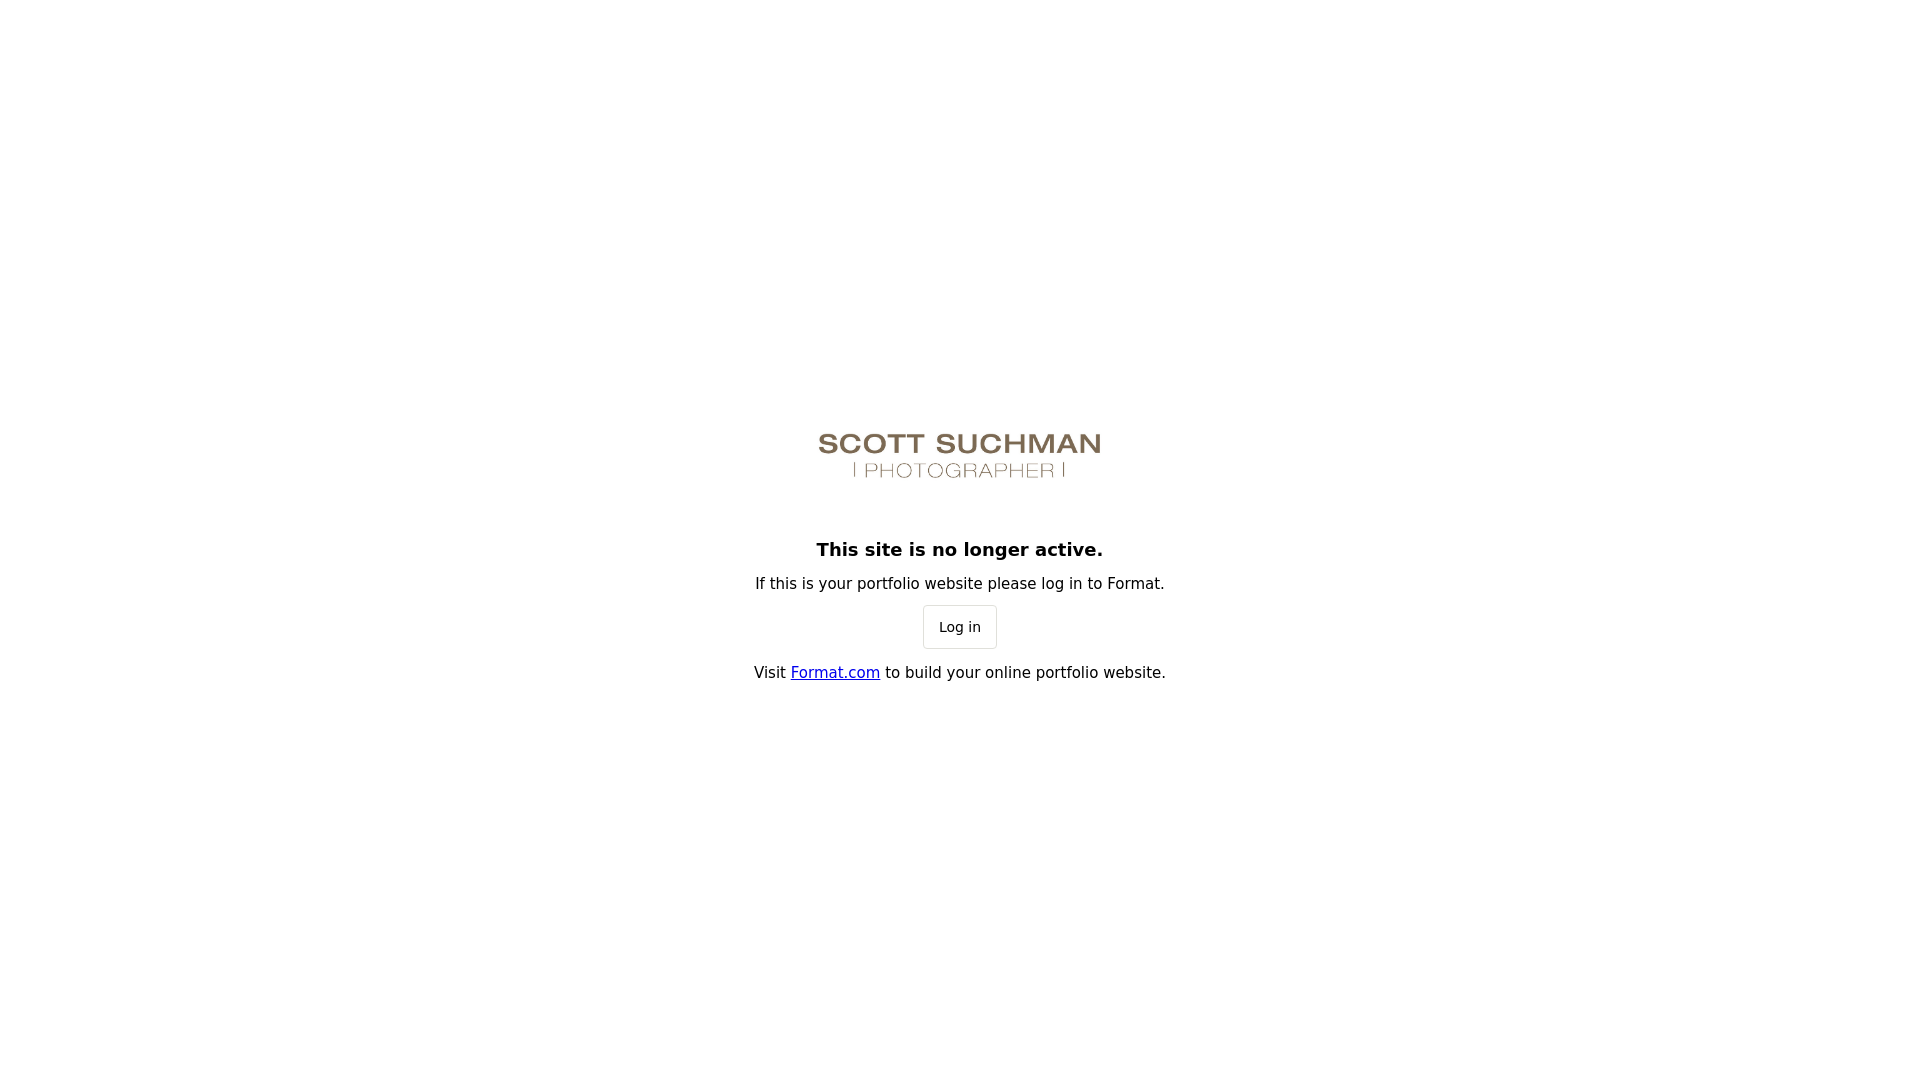 Scott Suchman desktop